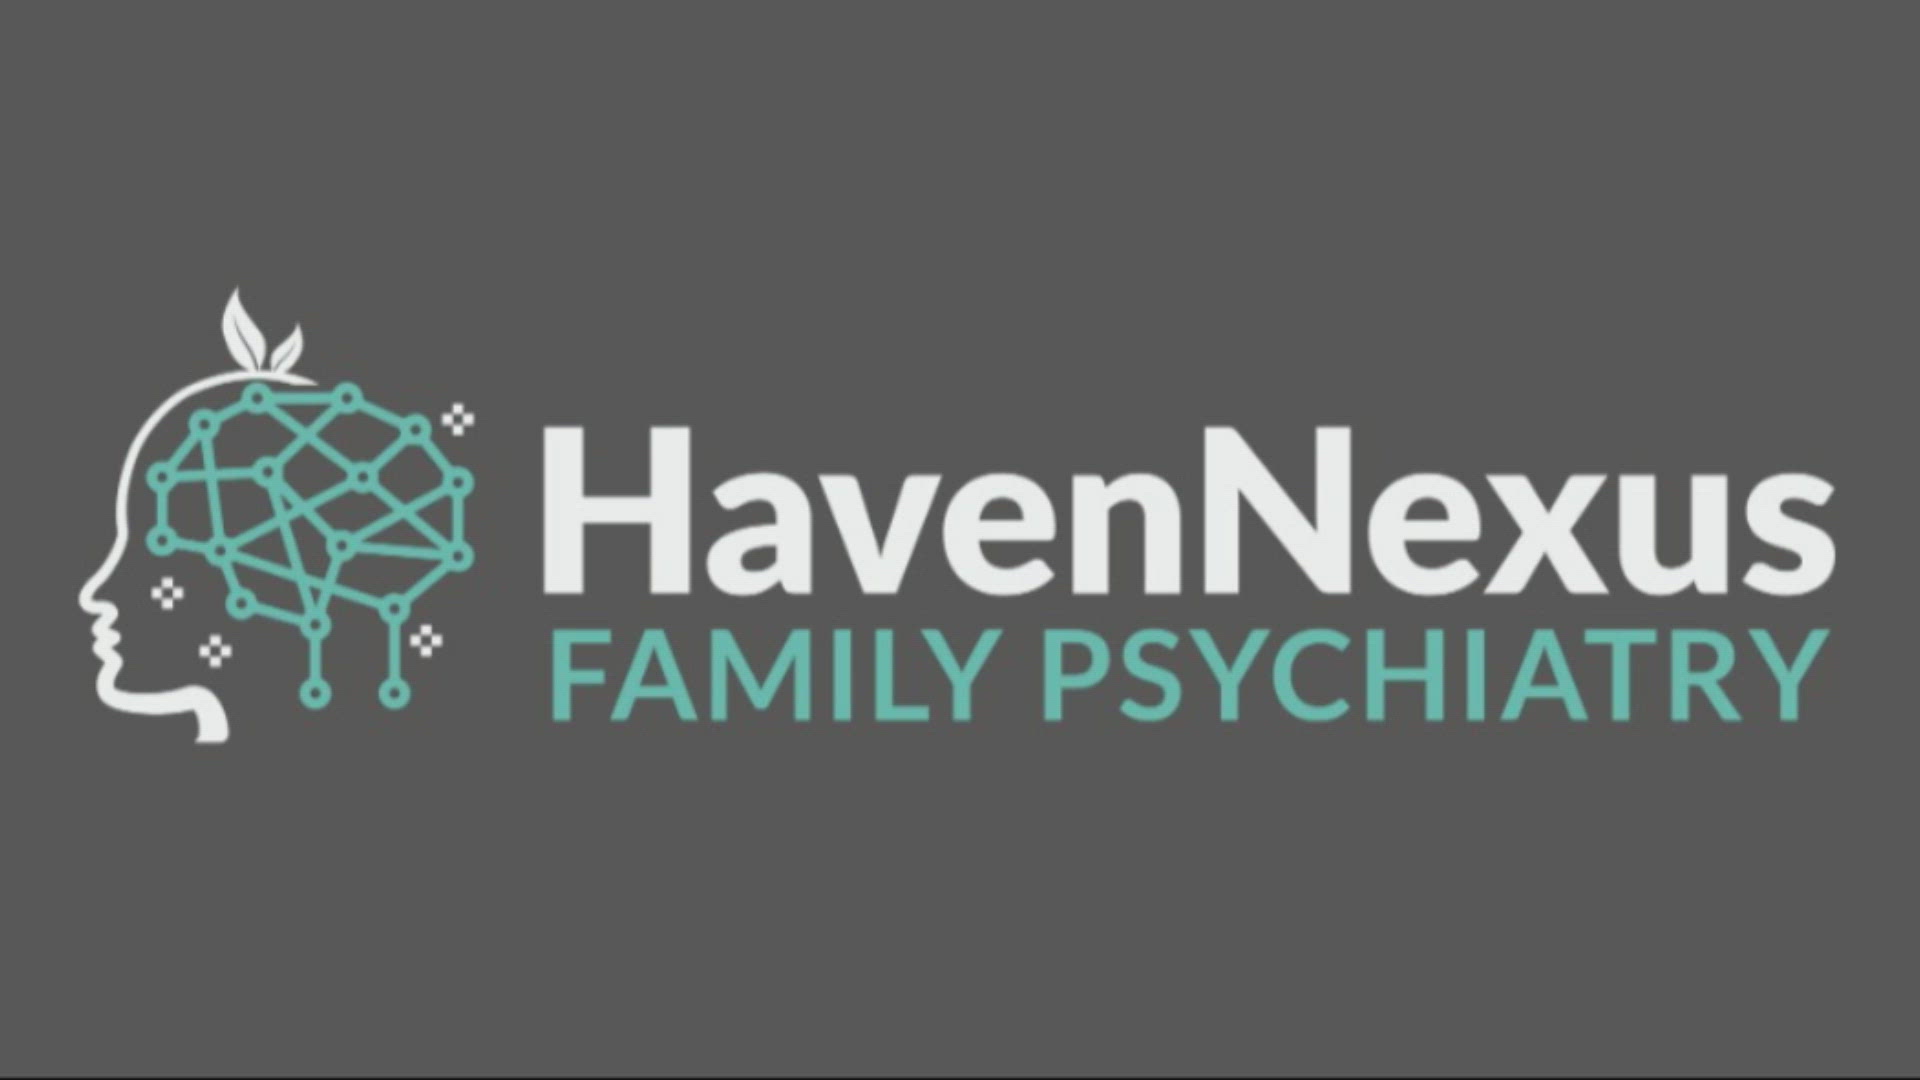 HavenNexus Family Psychiatry